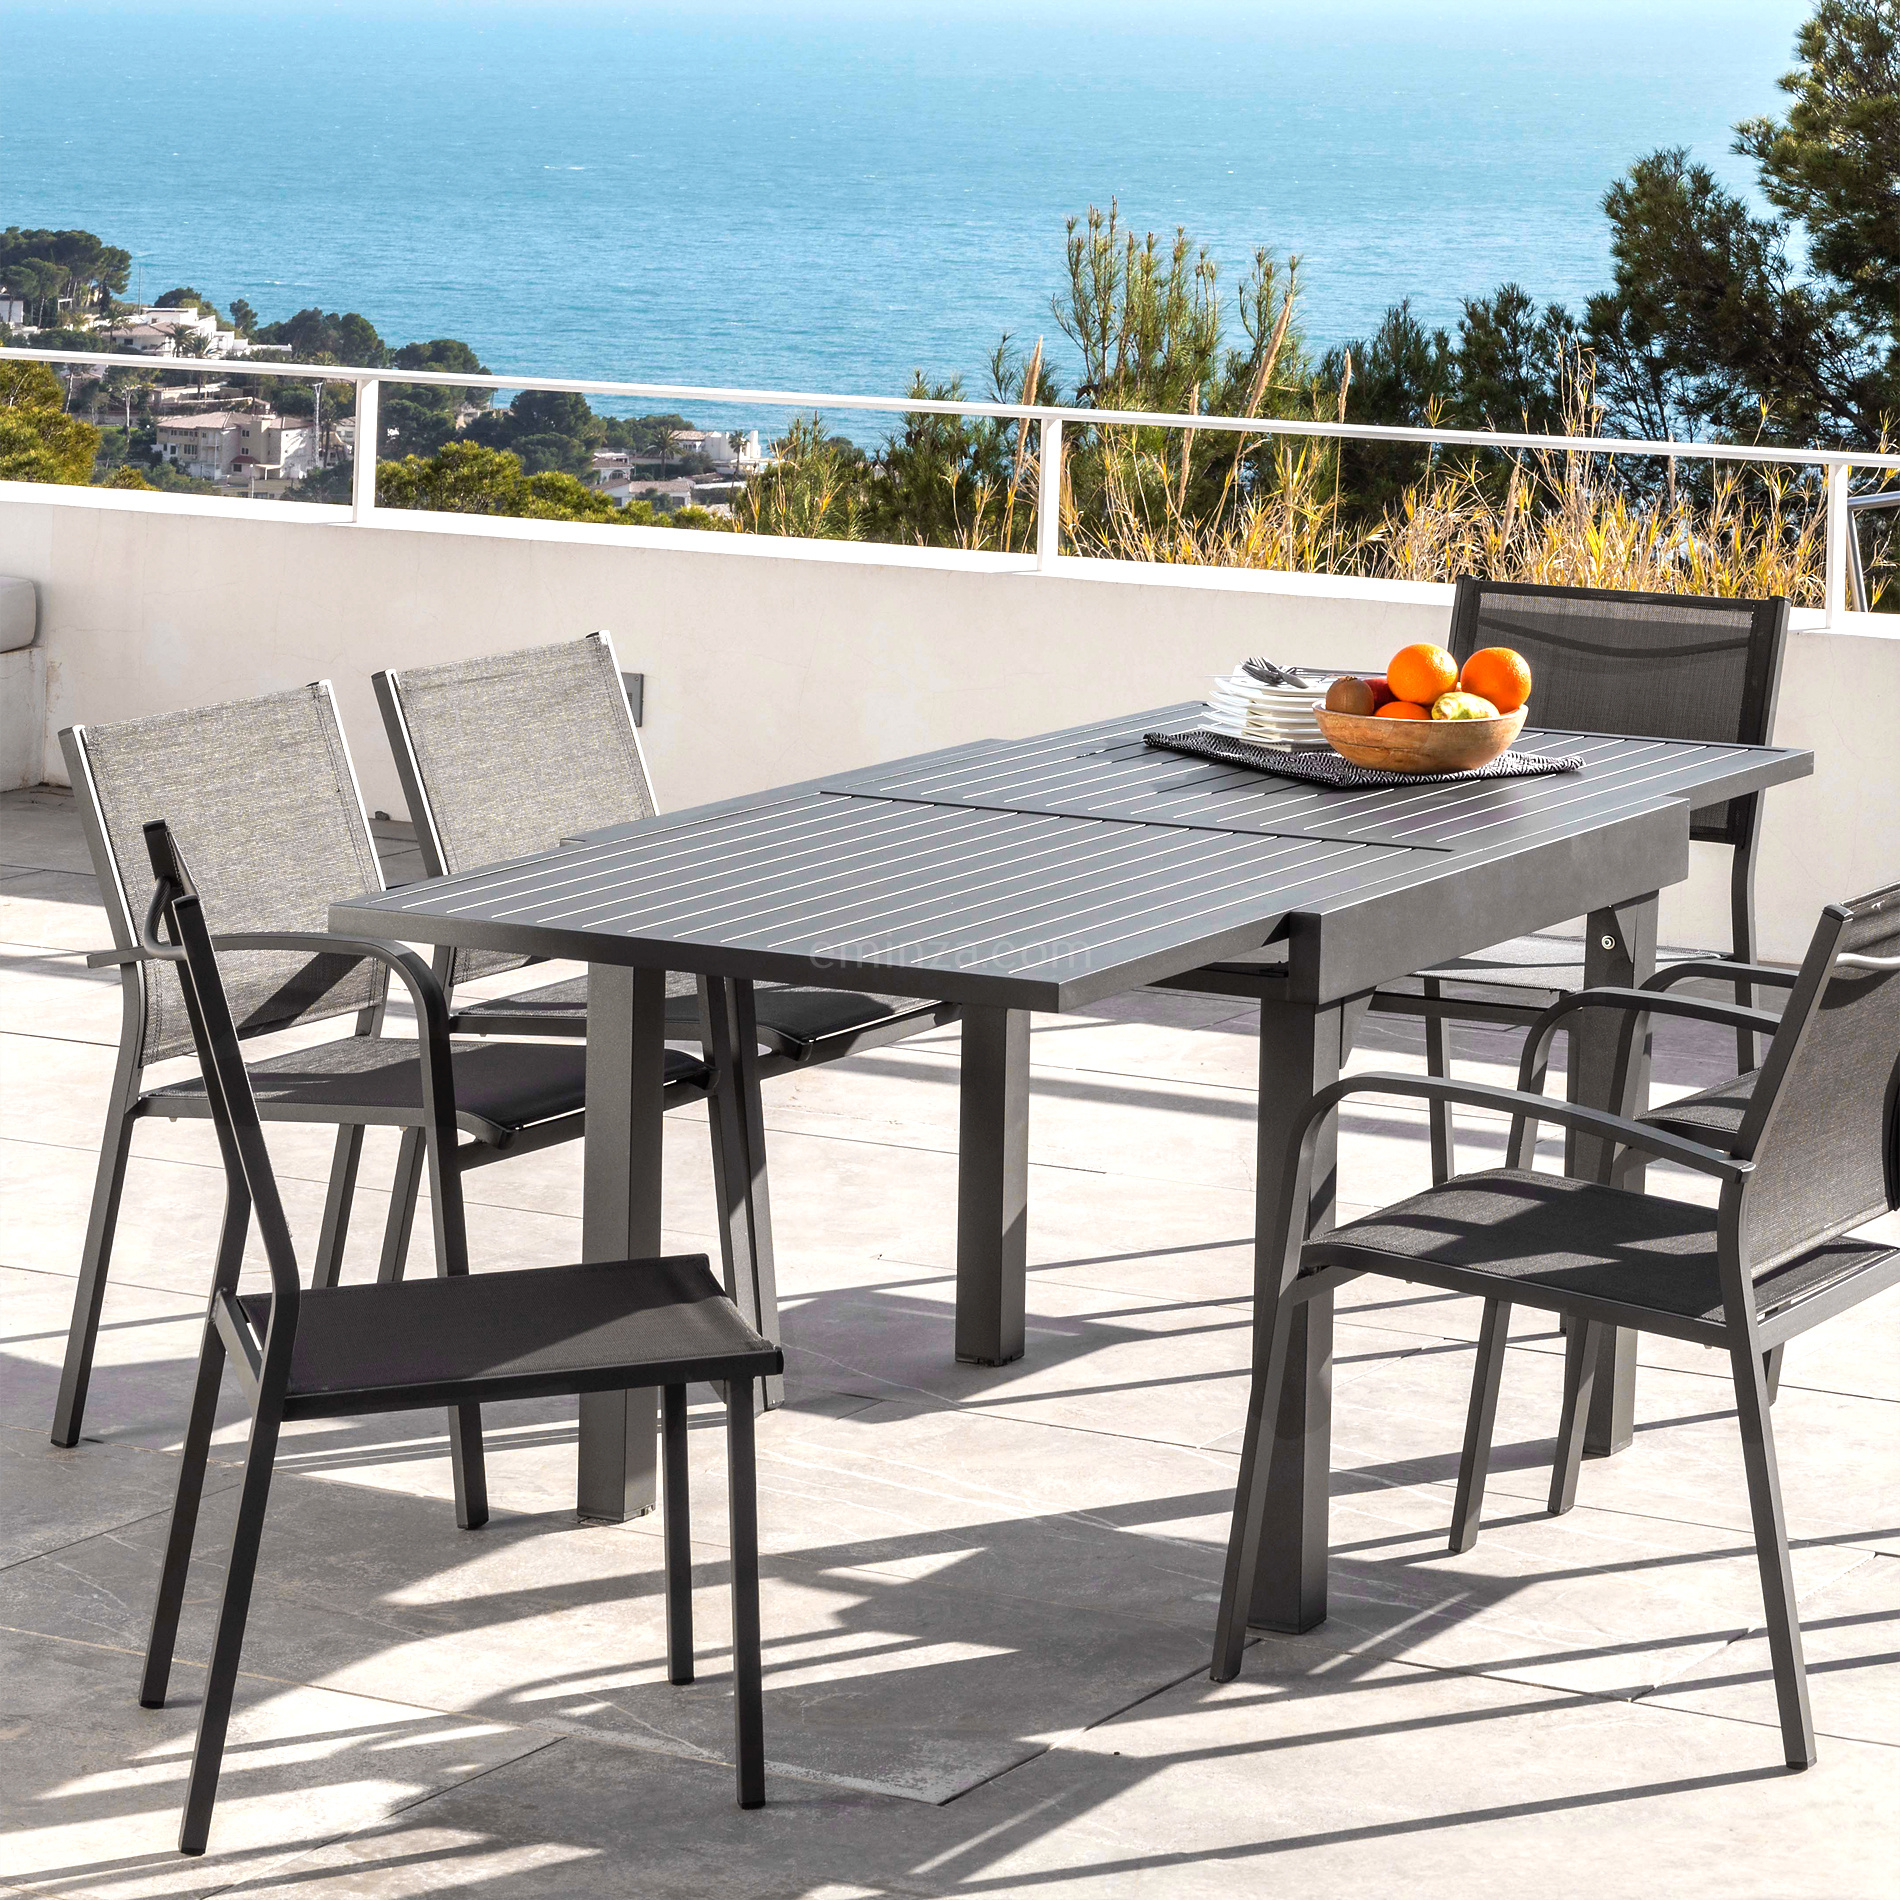 Tavolo da giardino allungabile 8 posti Alluminio Murano (180 x 90 cm) -  Grigio antracite - Salotto da giardino, tavoli e sedie - Eminza